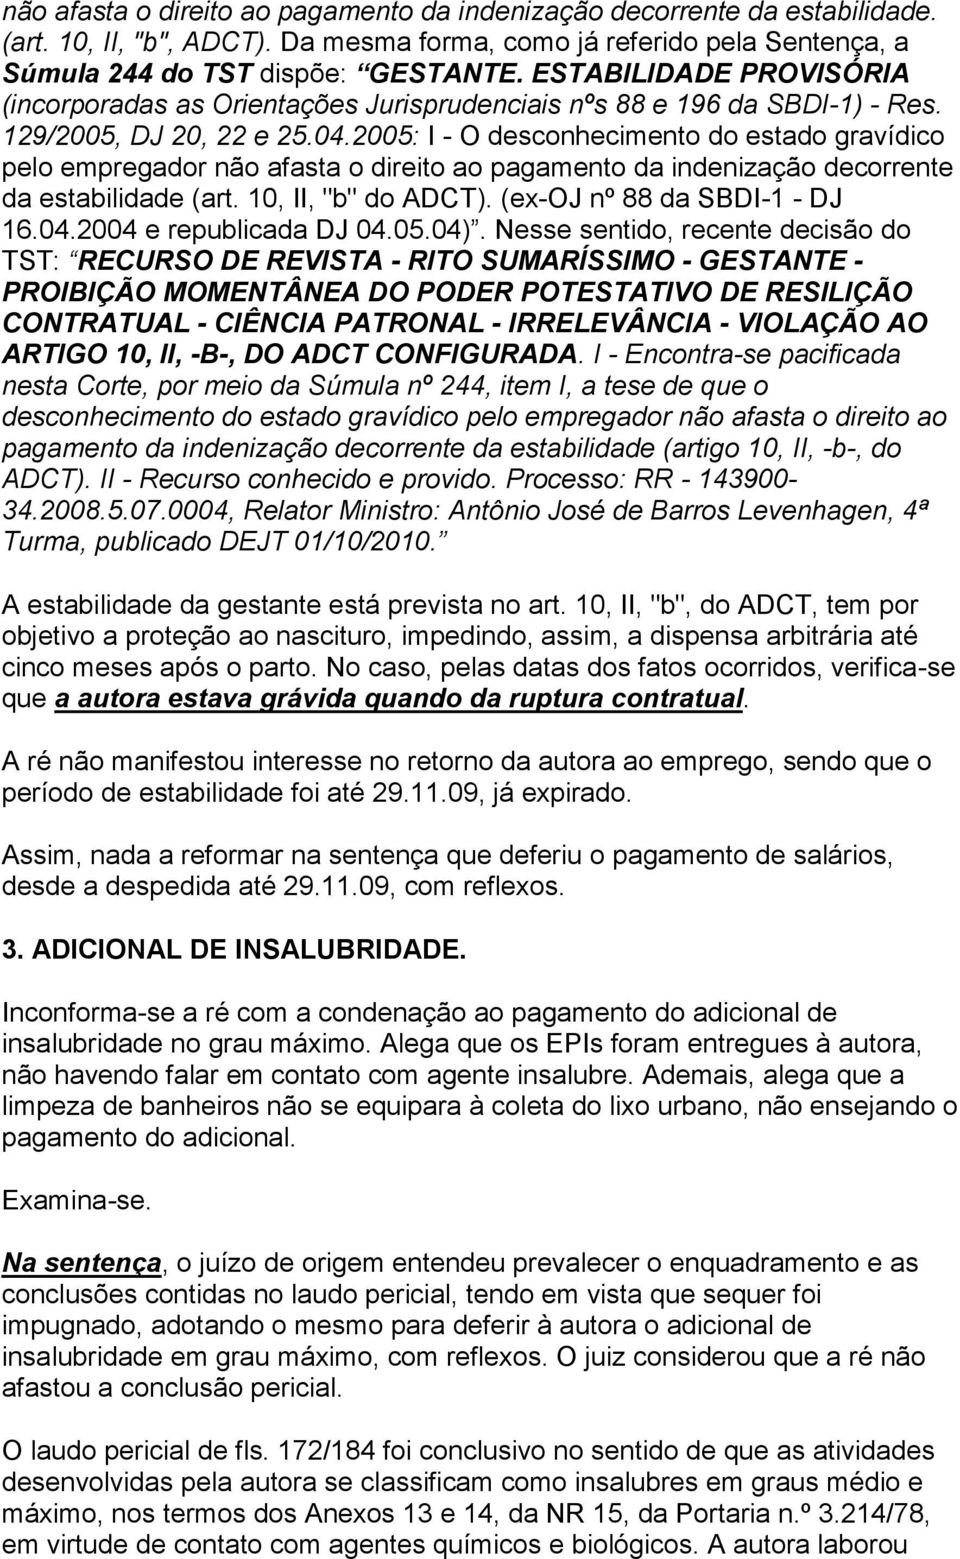 2005: I - O desconhecimento do estado gravídico pelo empregador não afasta o direito ao pagamento da indenização decorrente da estabilidade (art. 10, II, "b" do ADCT). (ex-oj nº 88 da SBDI-1 - DJ 16.